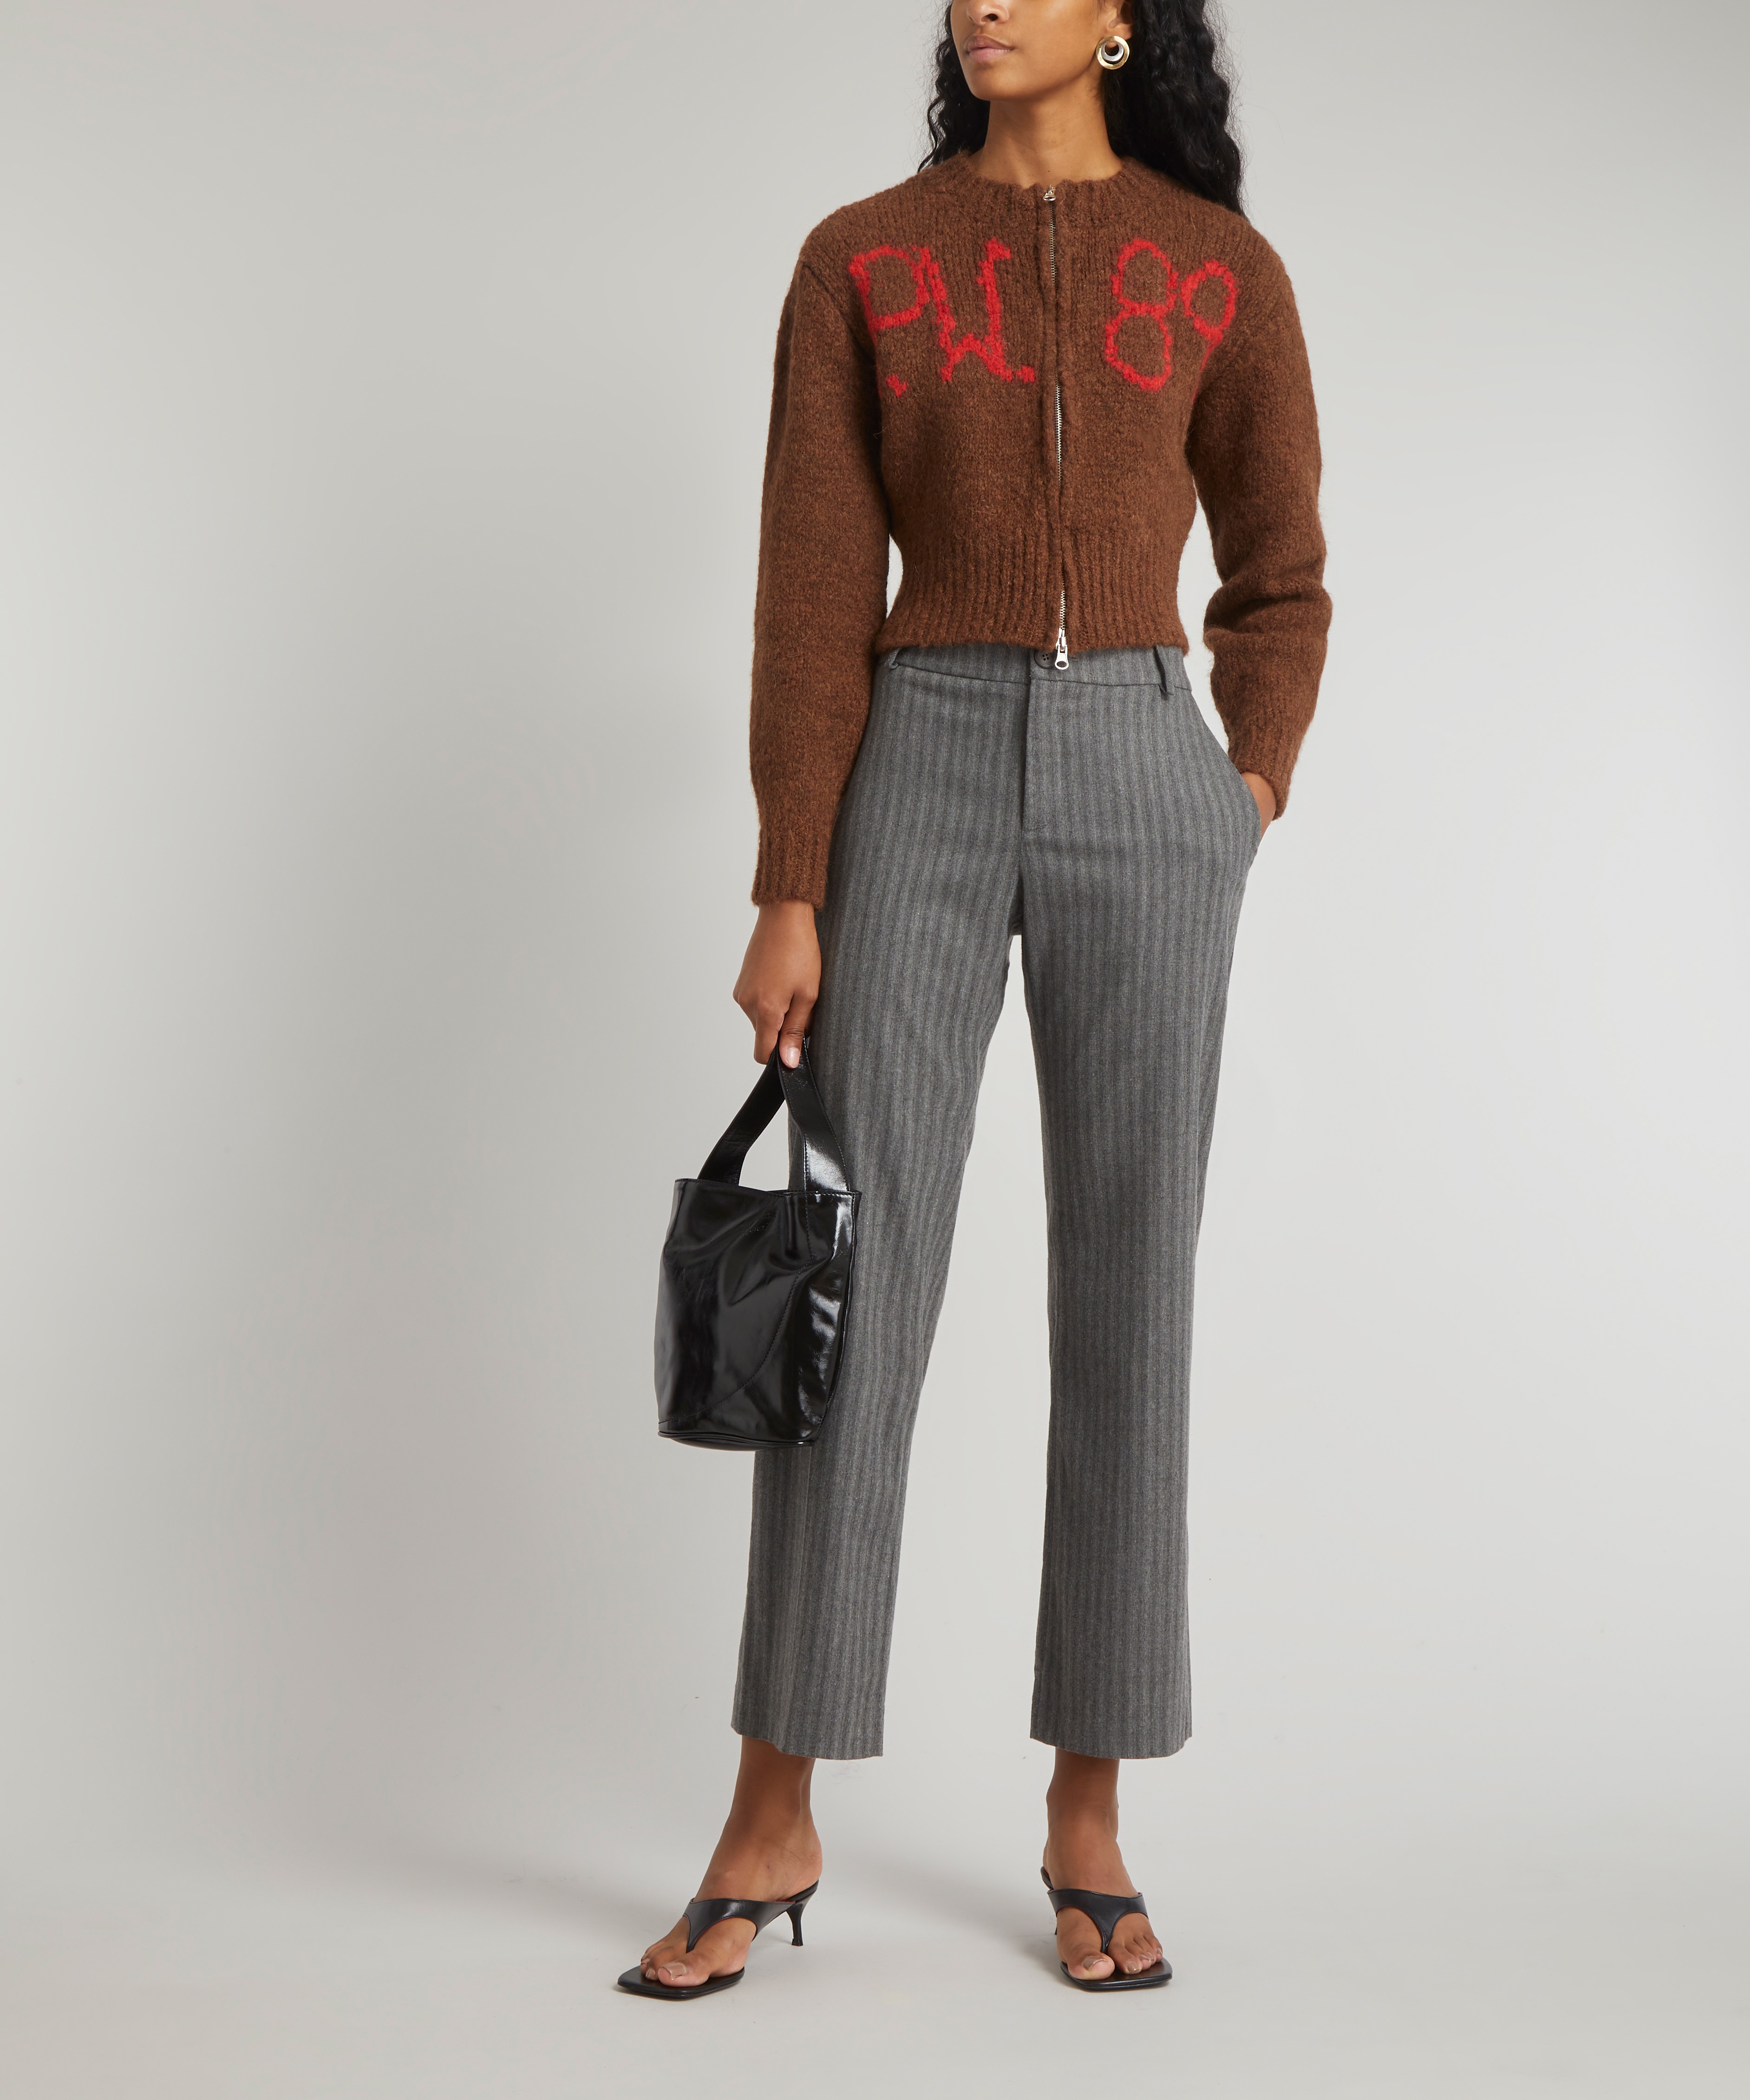 Paloma Wool Ben Perdut Knitted Zipped Cardigan | Liberty